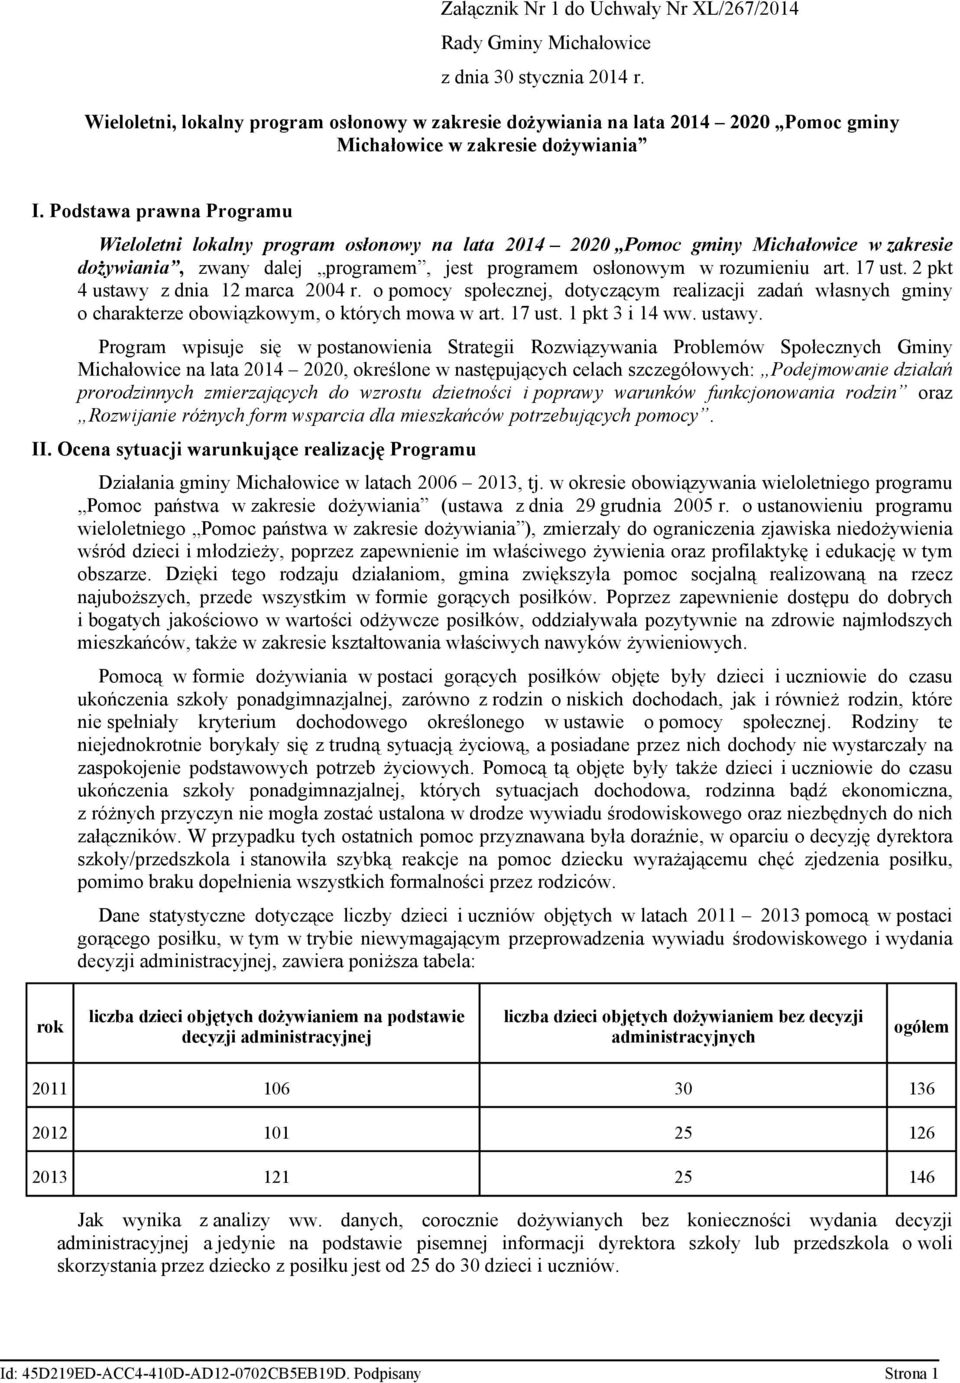 Podstawa prawna Programu Wieloletni lokalny program osłonowy na lata 2014 2020 Pomoc gminy Michałowice w zakresie dożywiania, zwany dalej programem, jest programem osłonowym w rozumieniu art. 17 ust.